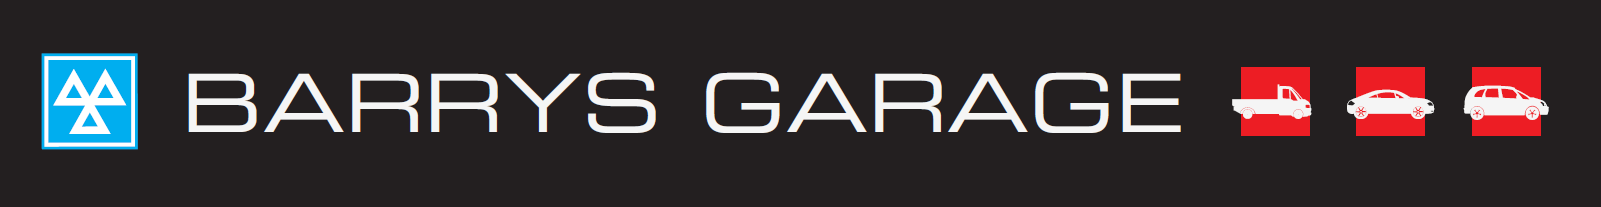 Barrys Garage logo